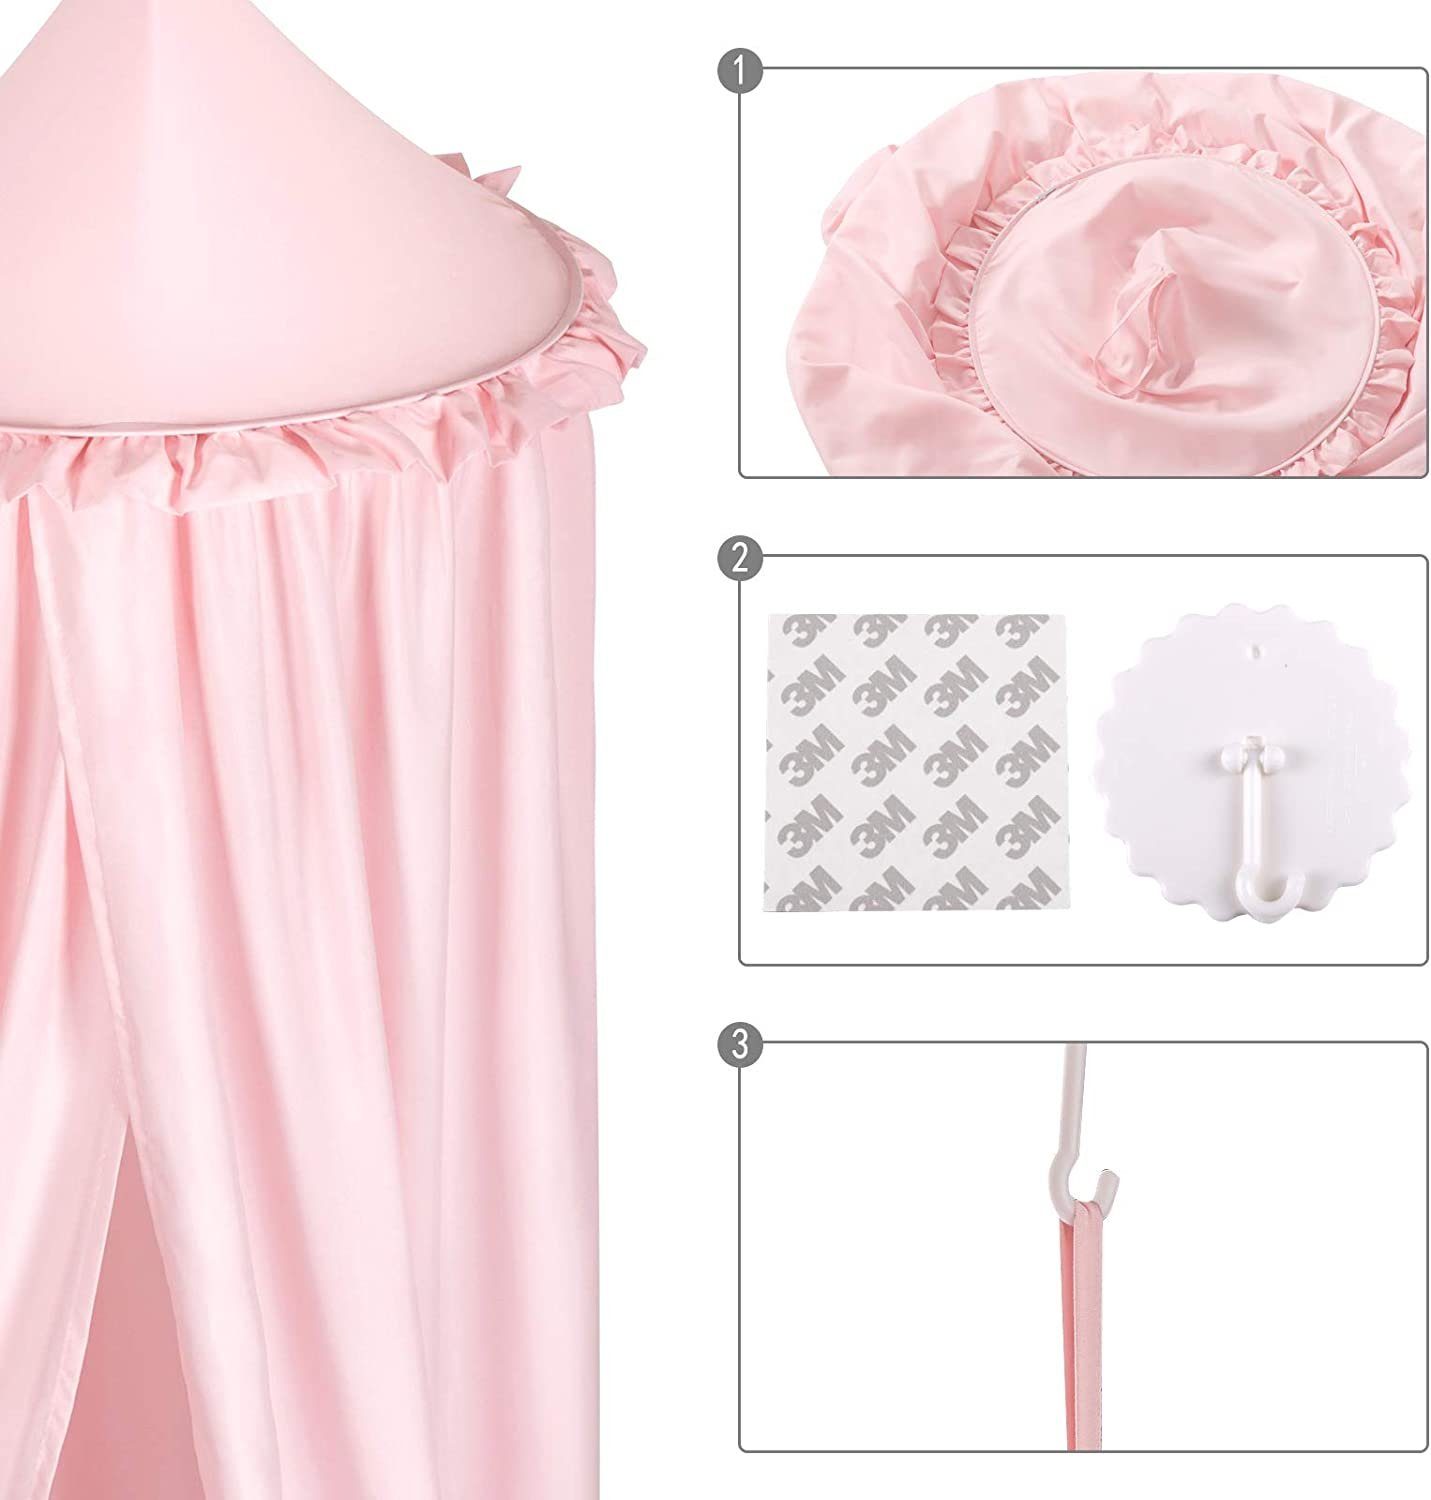 EUGAD Bettzelt Moskitonetz Betthimmel (1-tlg) rosa für Schlafzimmer Spielzelte